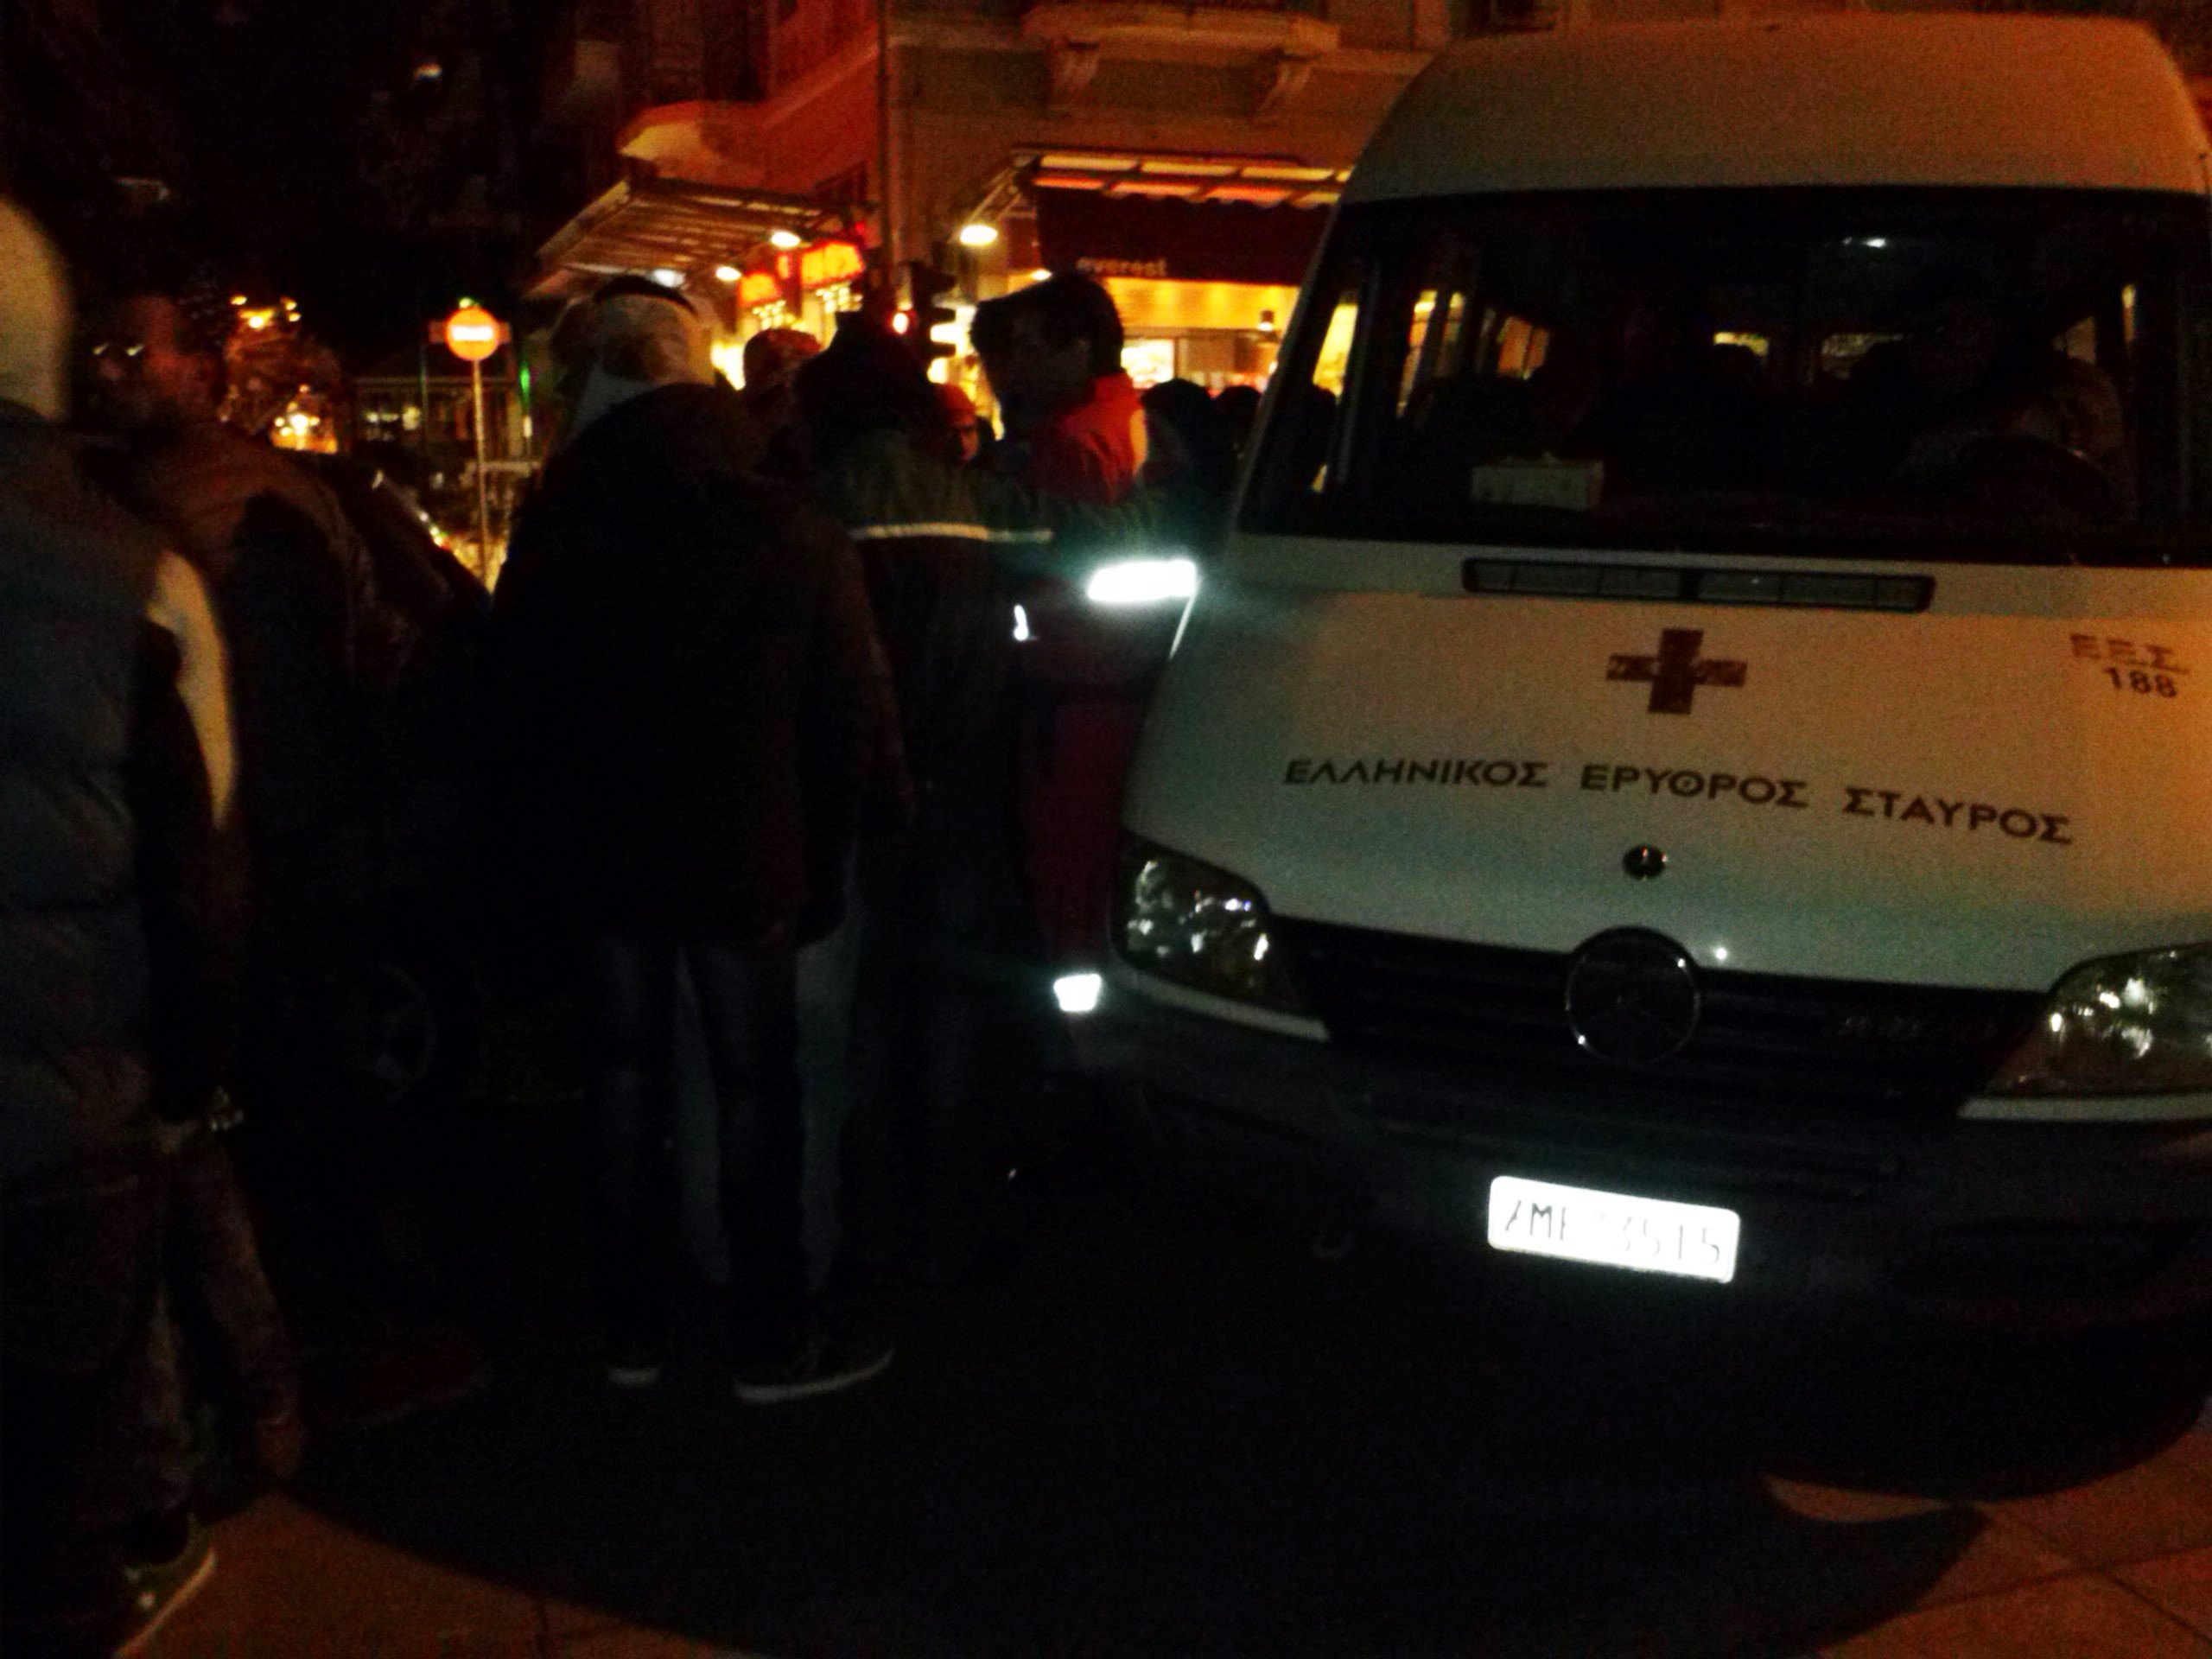 Κλιμάκια του Ελληνικού Ερυθρού Σταυρού υποστηρίζουν  τους άστεγους και τους μετανάστες που ζουν στο κέντρο της Αθήνας